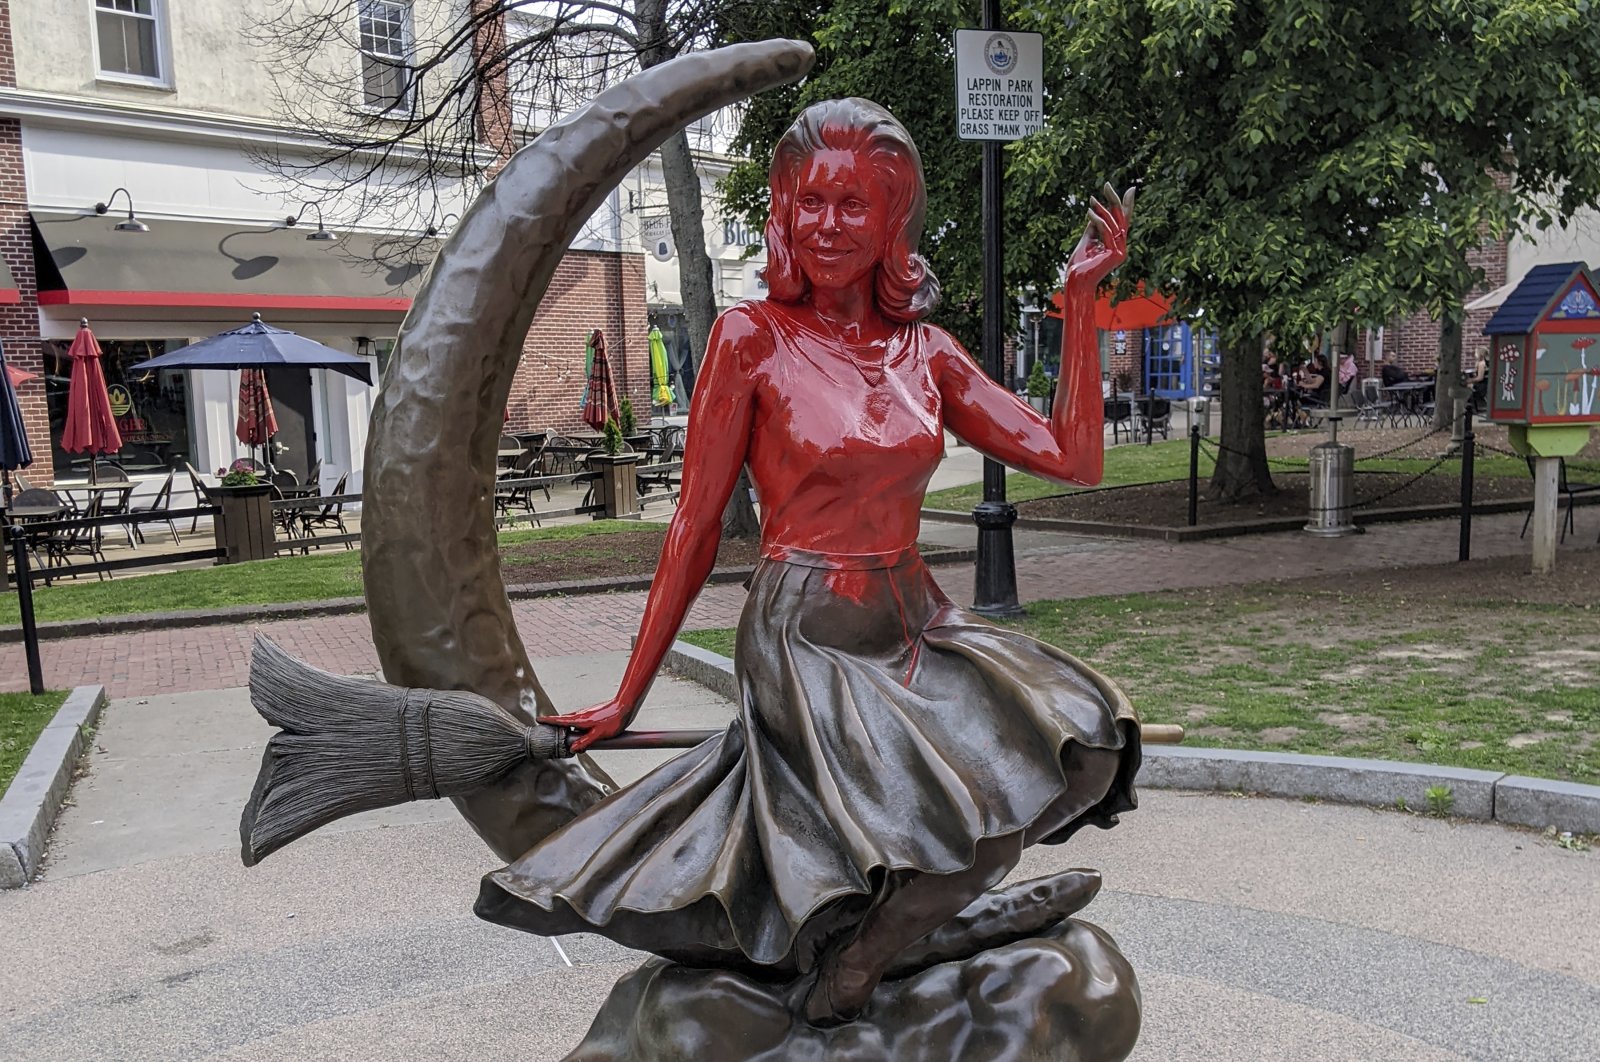 Target lokal patung ‘Terpesona’ dengan semprotan merah di Salem